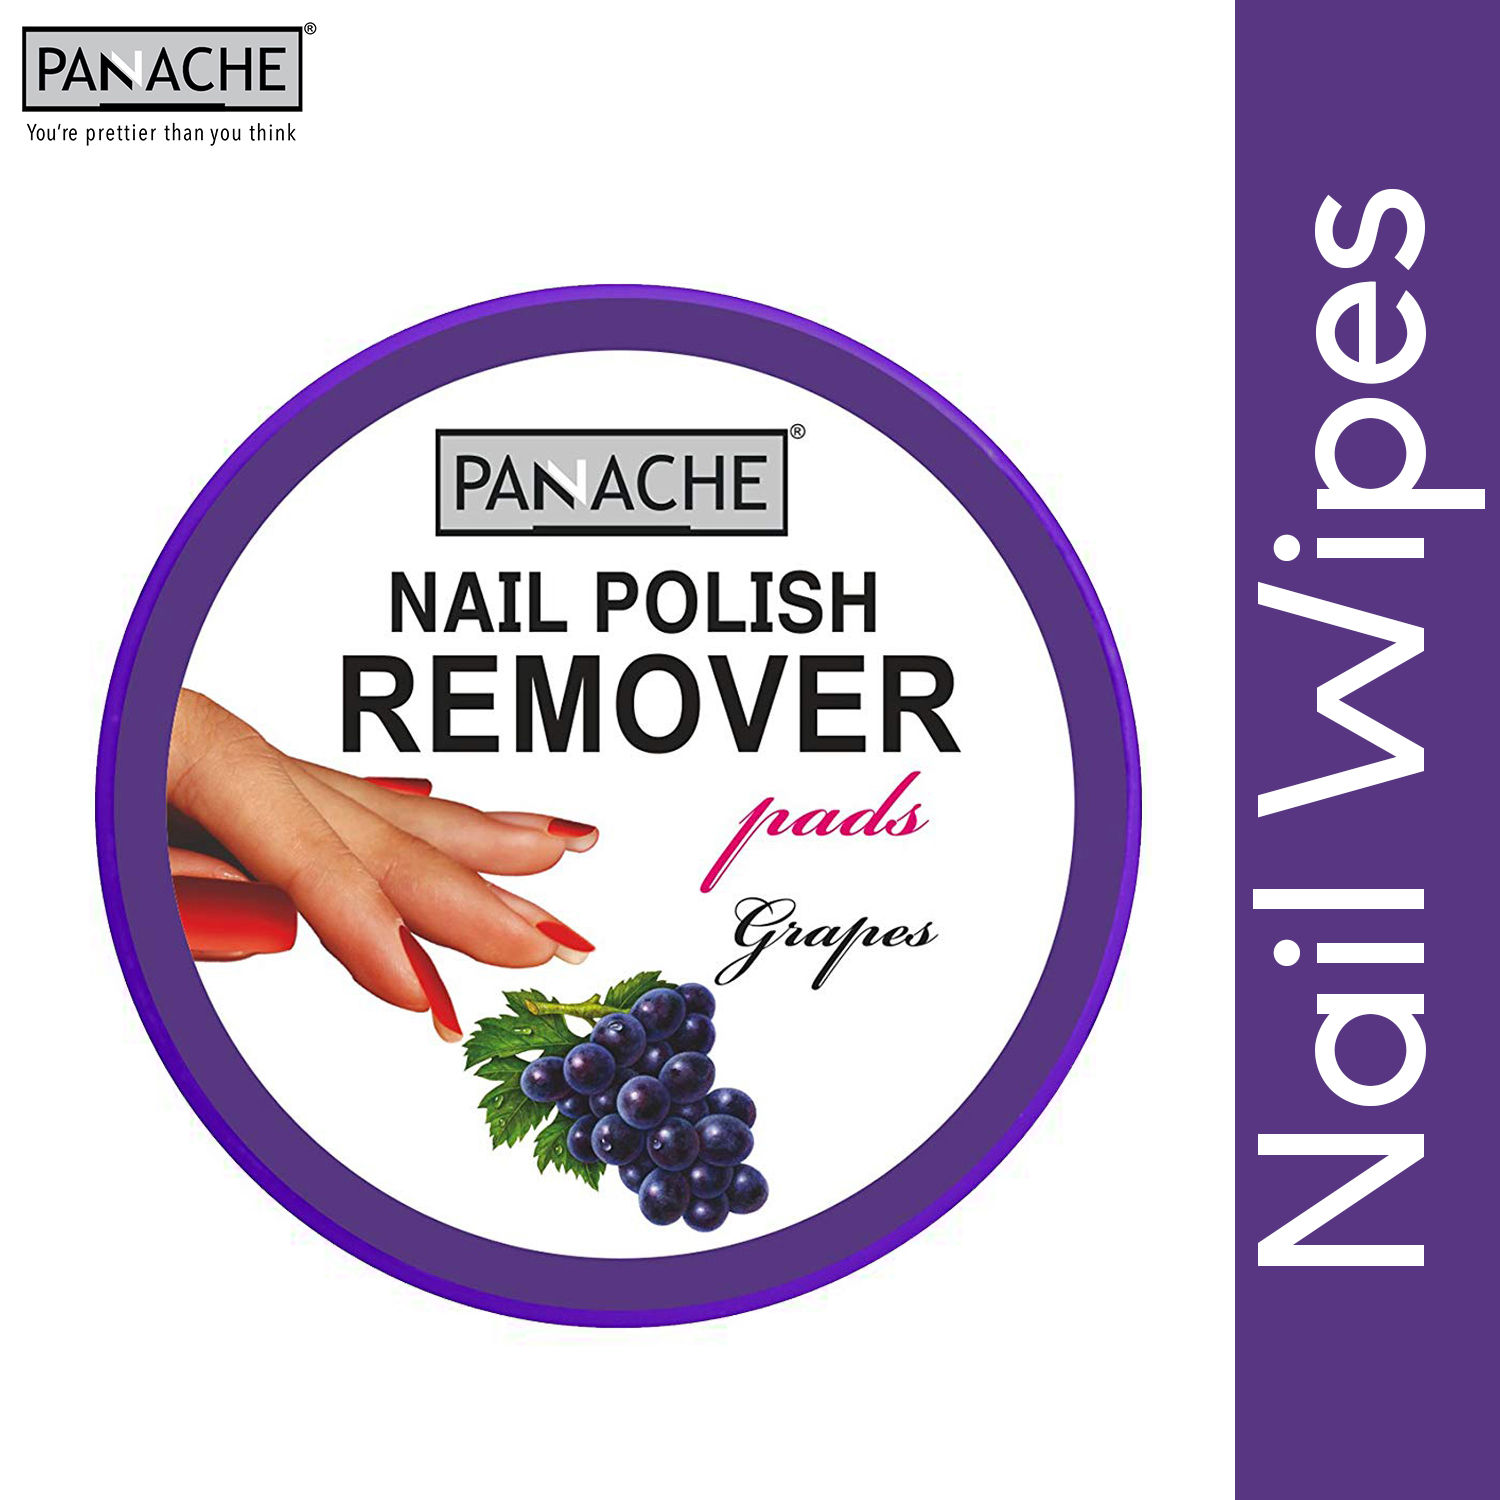 Panache Nail Polish Remover Pads - Grapes